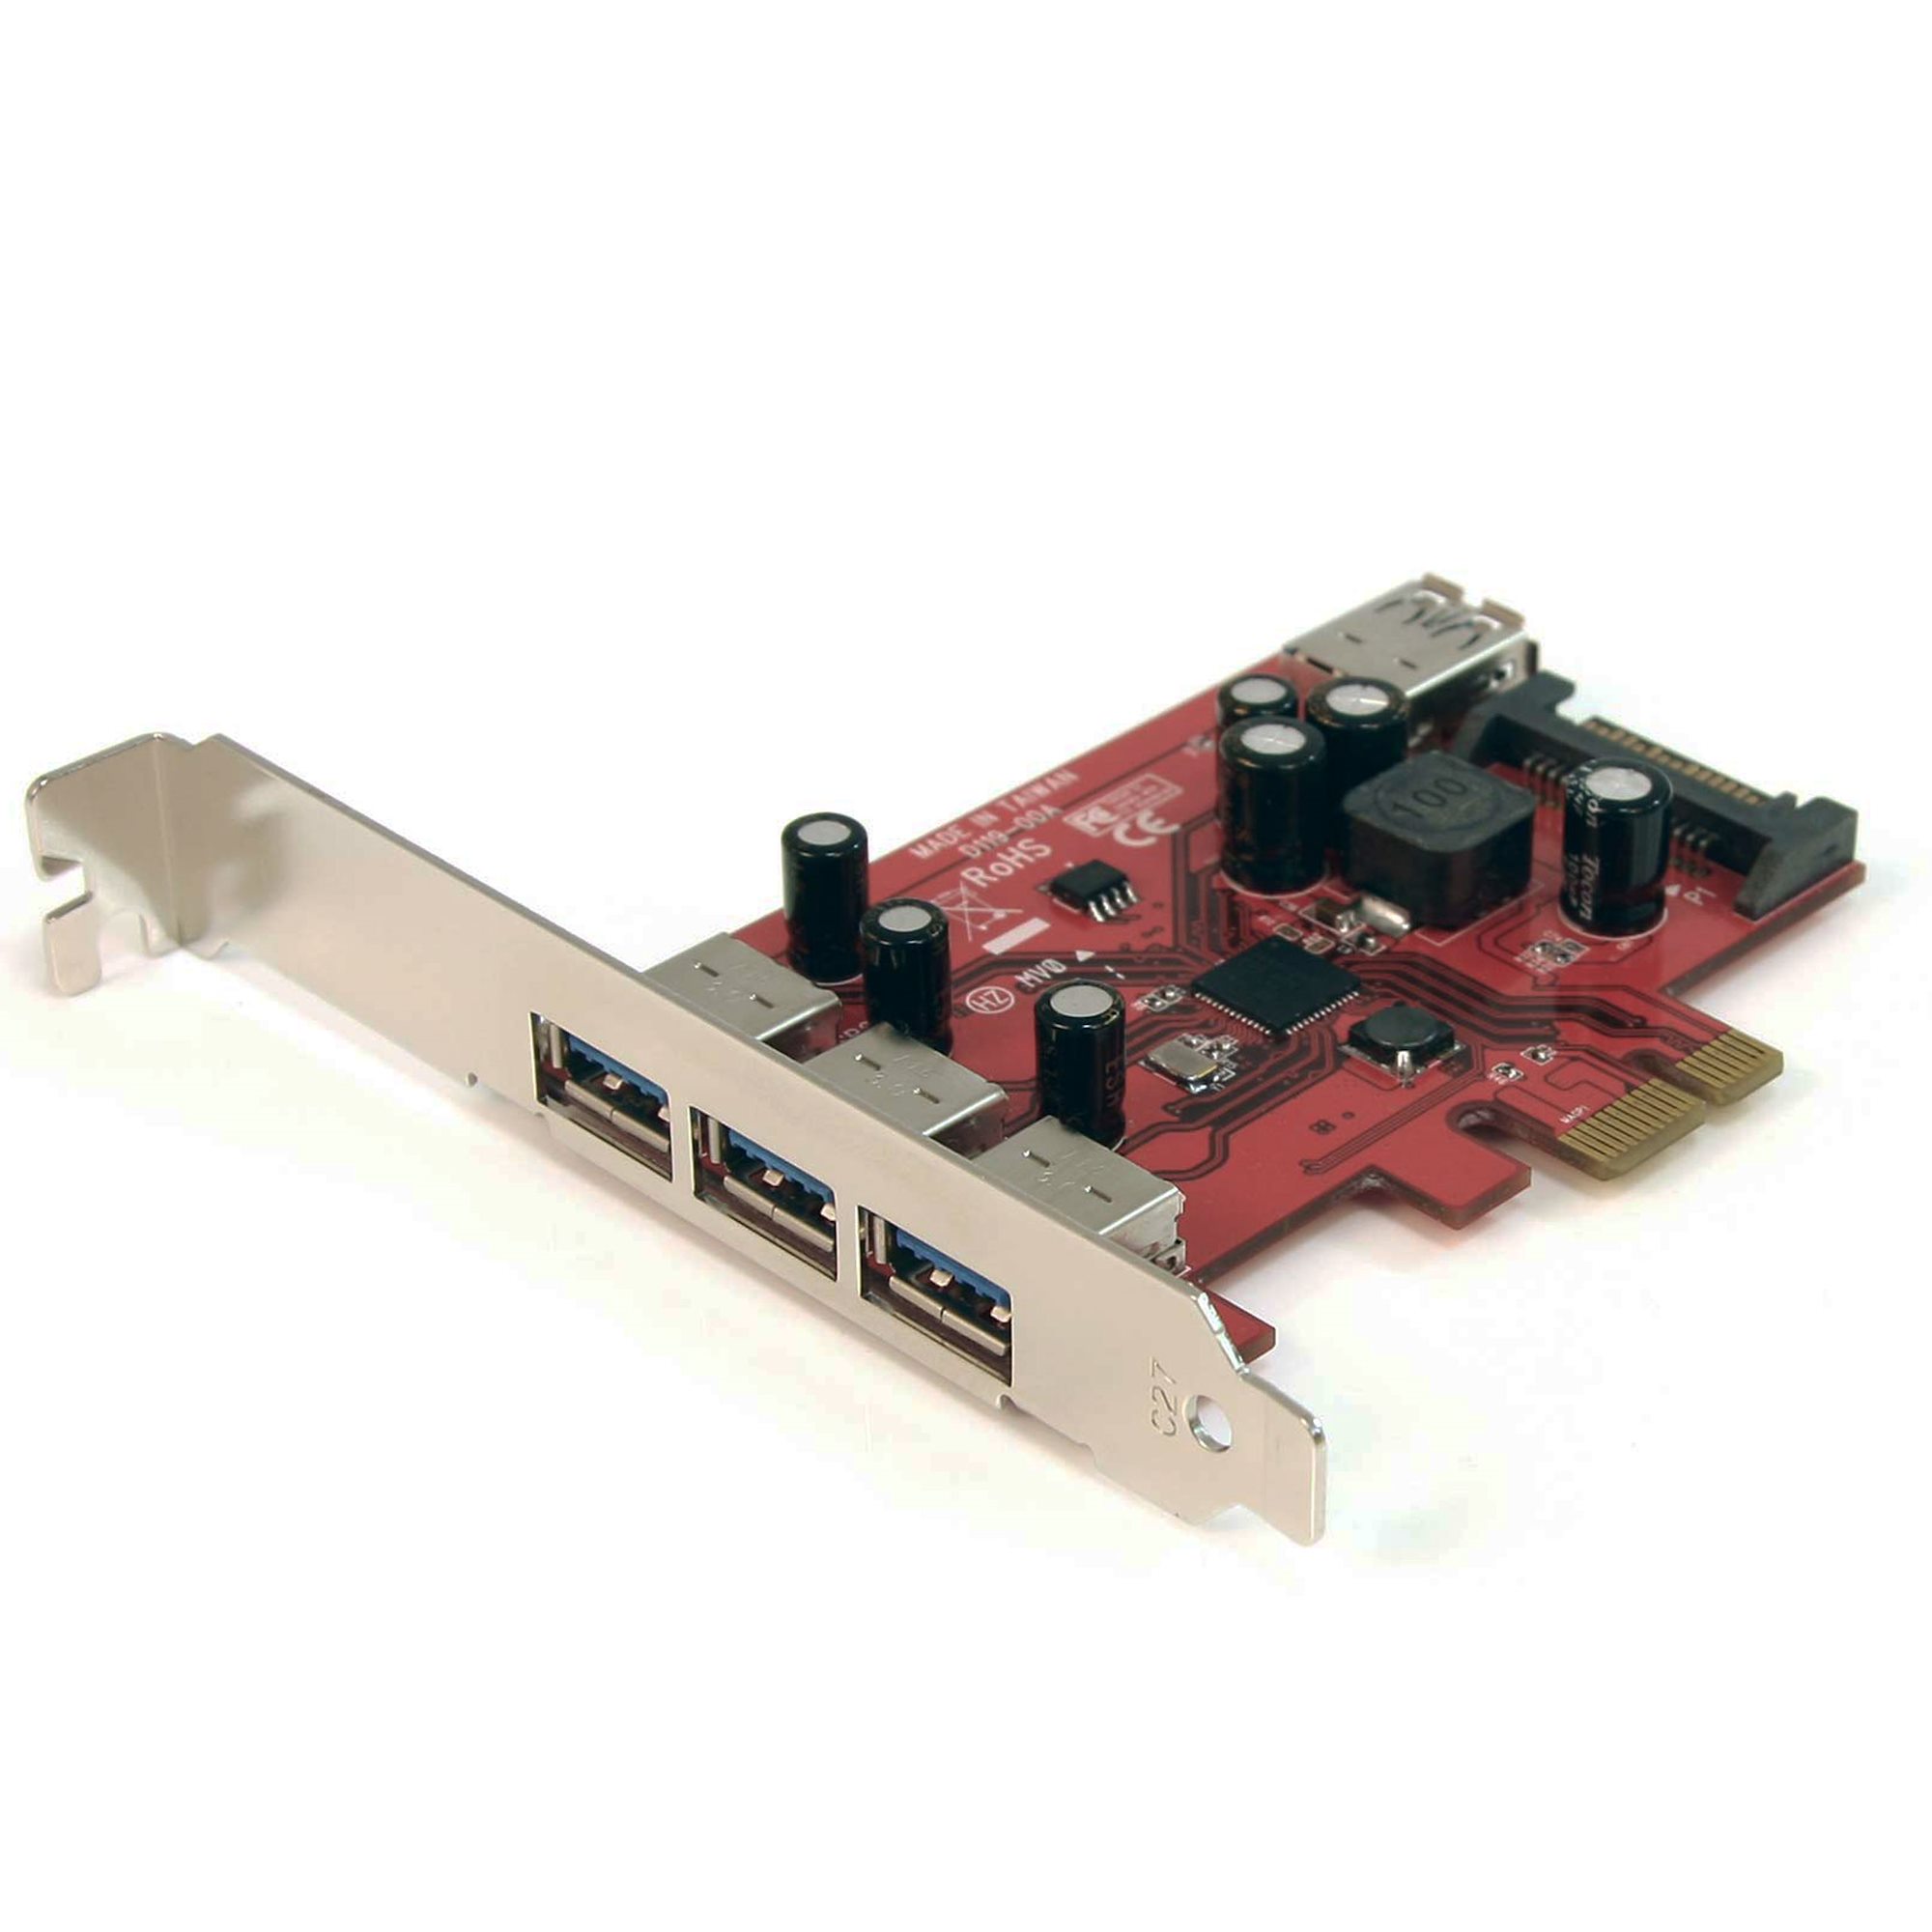 4 Port USB 3.0 PCIe Card with SATA Power - USB 3.0 Cards